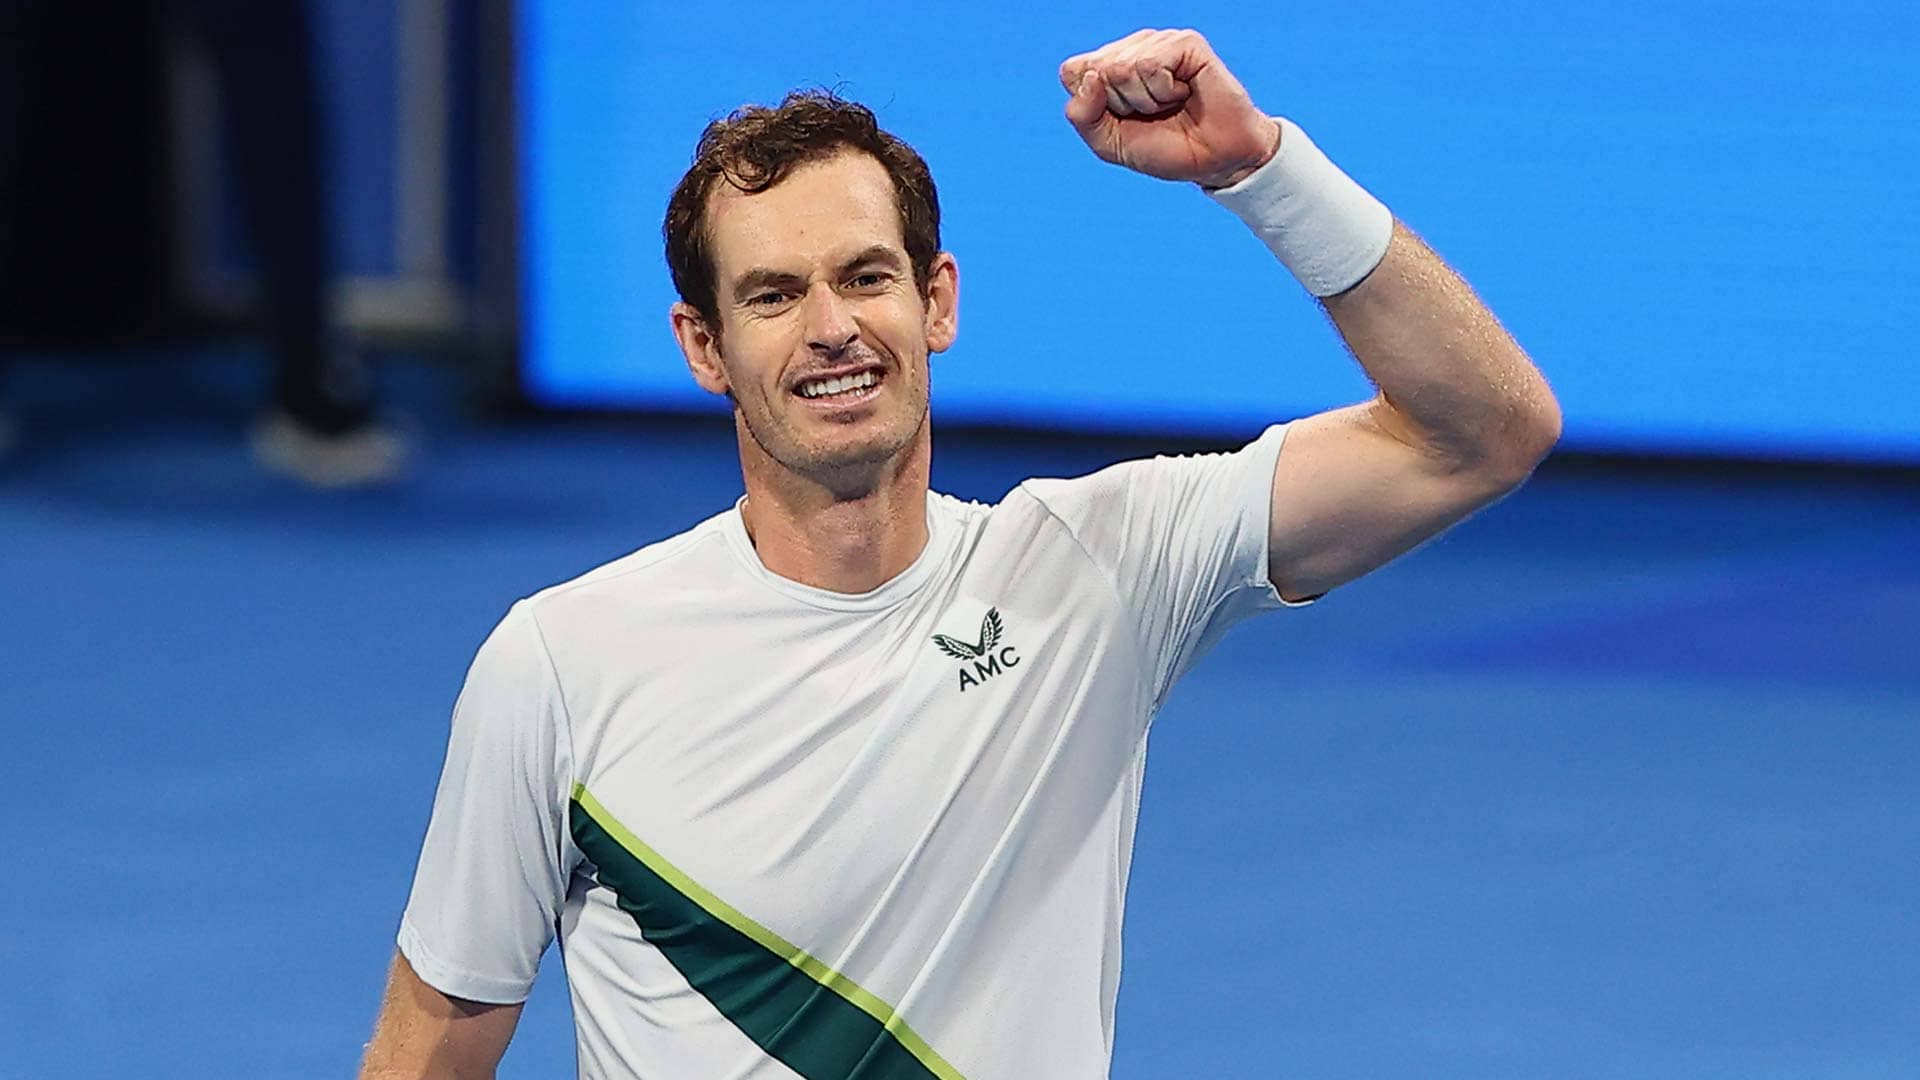 Andy Murray ušetří 5 poslanců, aby porazil Jiřího Lehku v Dauhá |  ATP Tour